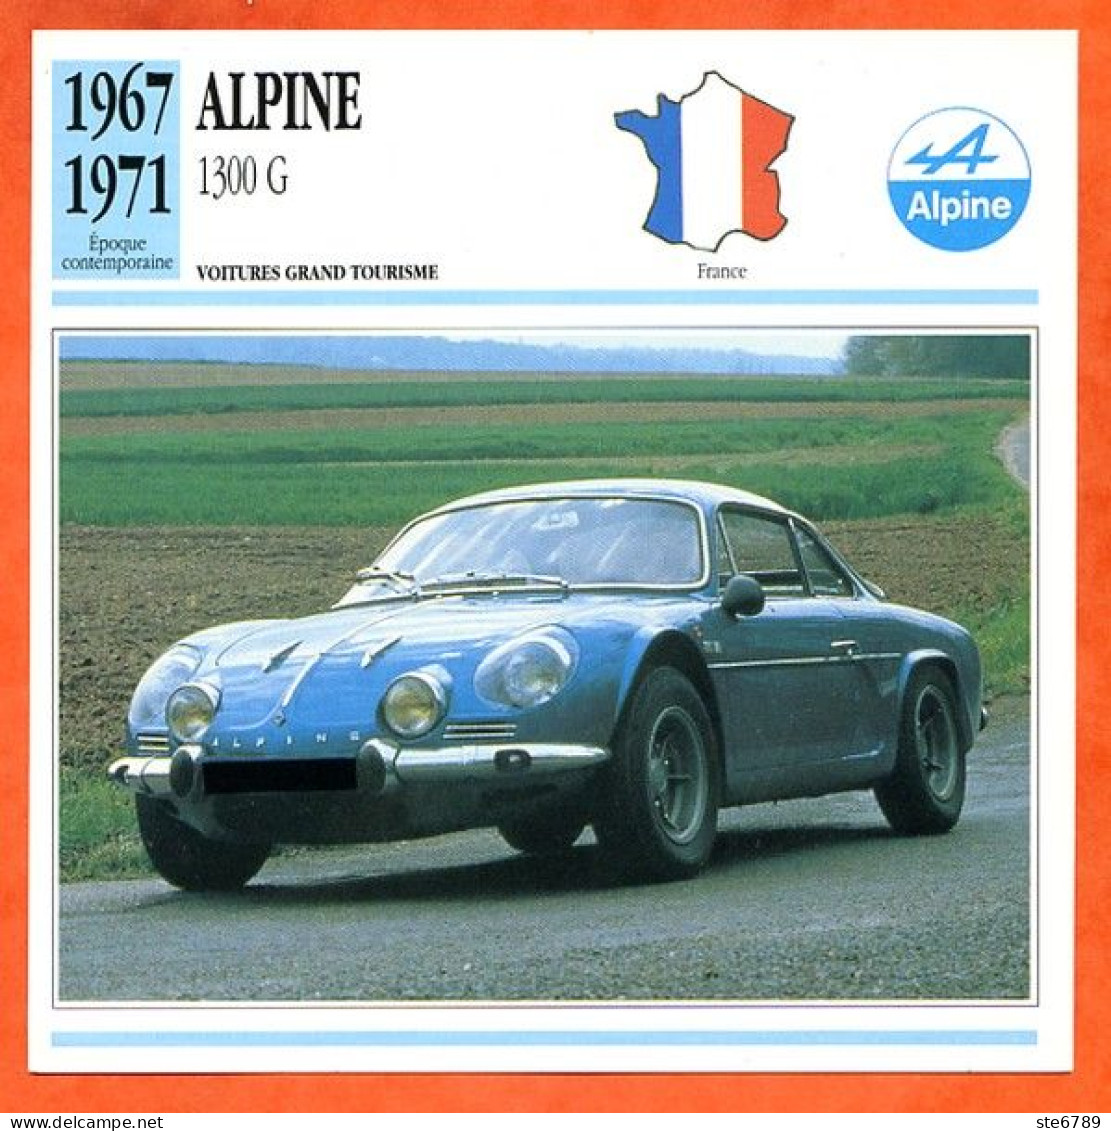 ALPINE 1300 G 1967  Voiture Grand Tourisme France Fiche Technique Automobile - Voitures